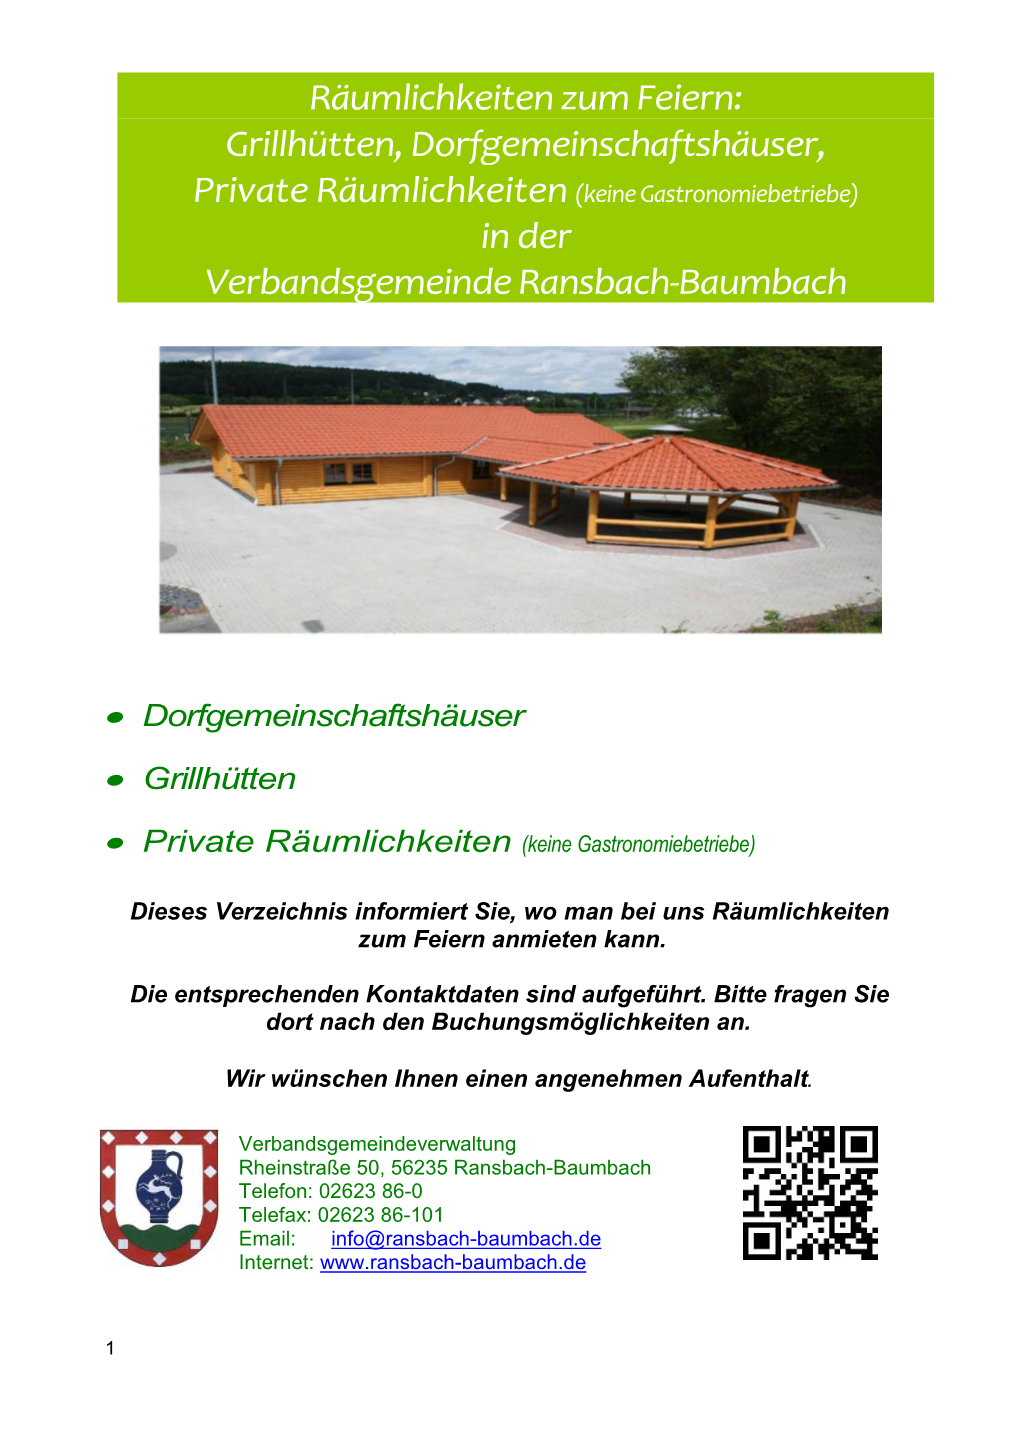 Grillhütten, Dorfgemeinschaftshäuser, Private Räumlichkeiten (Keine Gastronomiebetriebe) in Der Verbandsgemeinde Ransbach-Baumbach